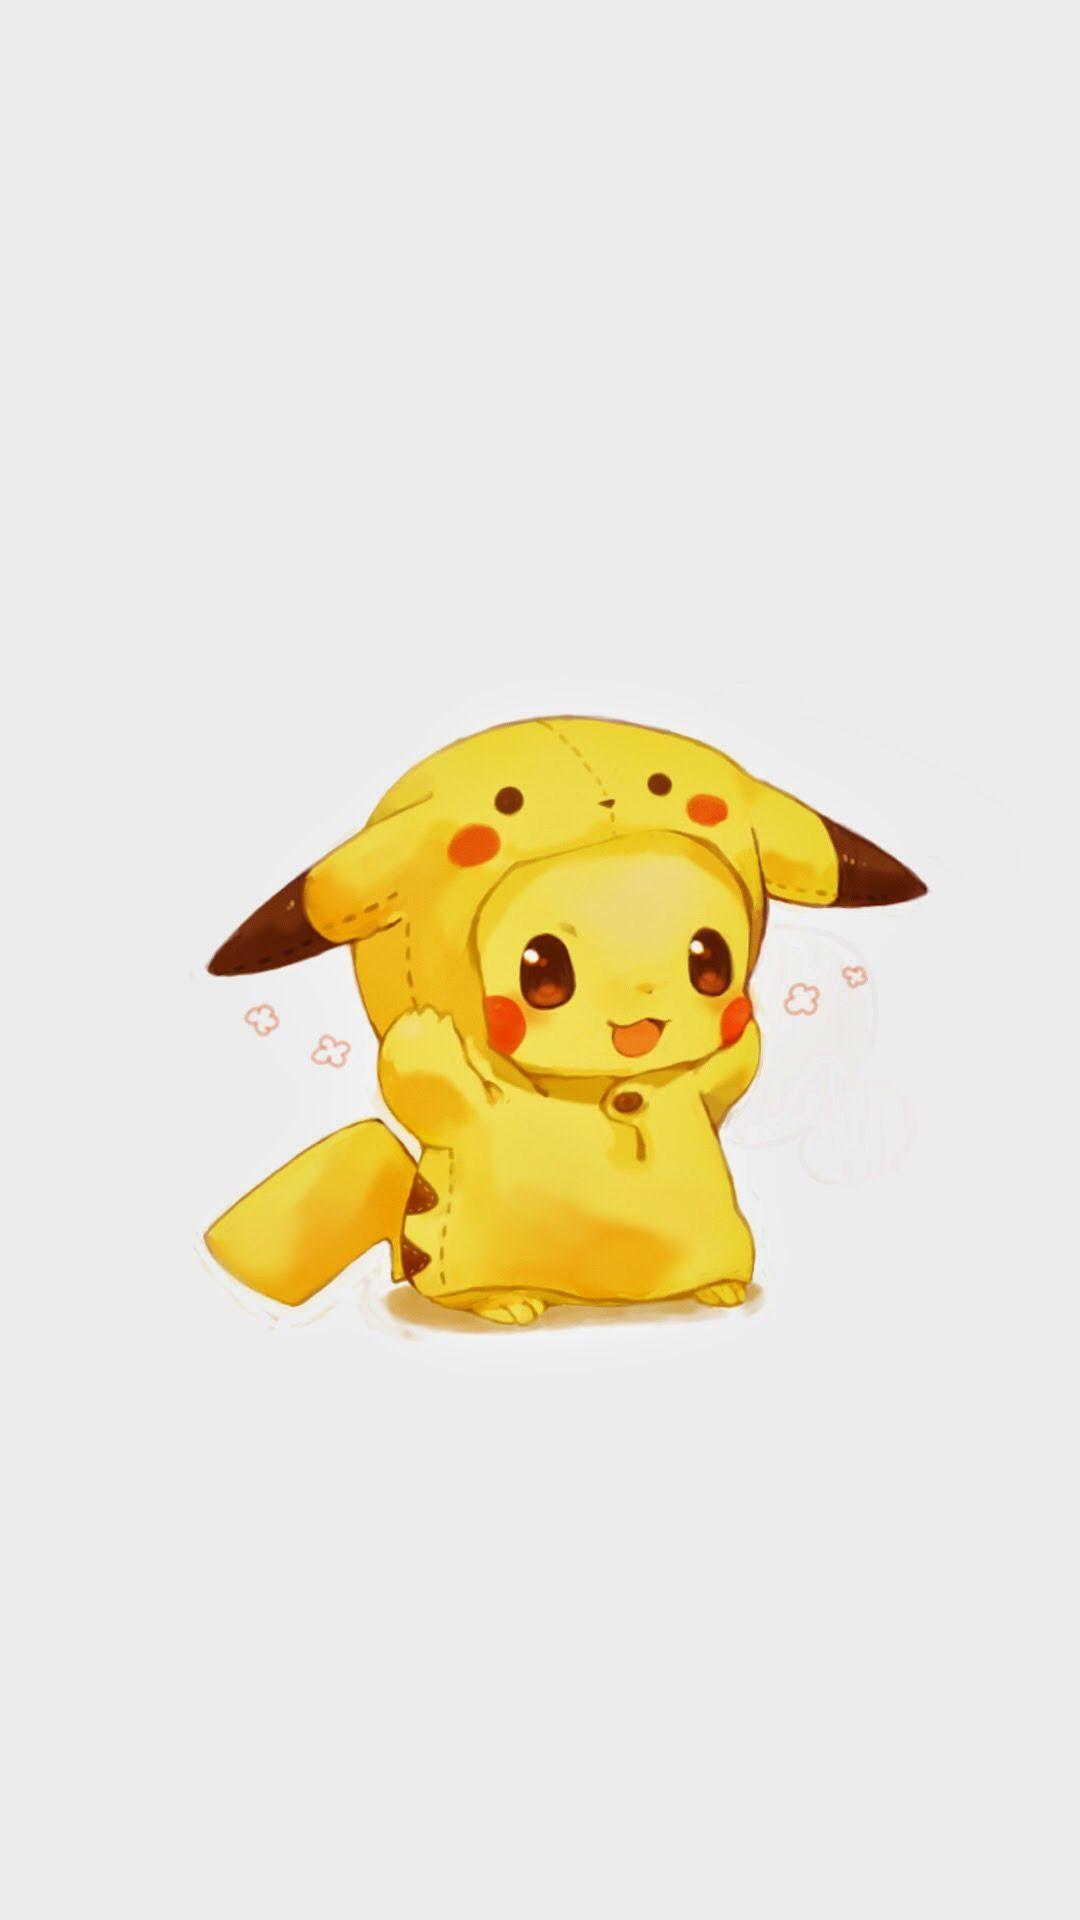 Cutest Pikachu Wallpaper Free Cutest Pikachu